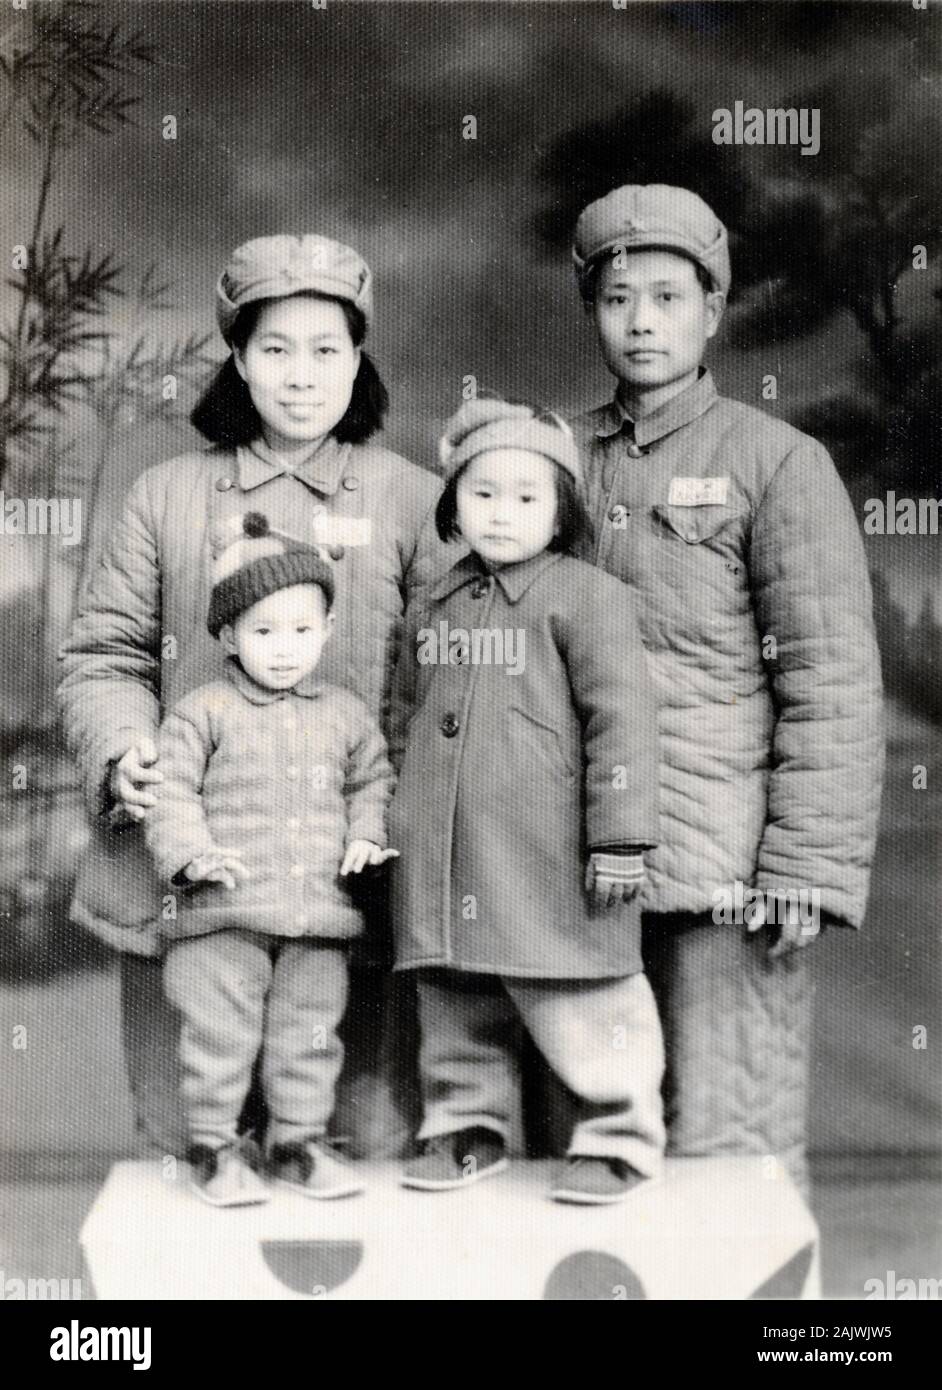 Idéaliste ou idéal famille chinoise portant des costumes chinois, le président Mao tunique chinoise Costumes ou complets de Zhongshan. Couple et deux enfants avant l'introduction de la politique de l'enfant. Photographié en 1951 peu après la Révolution communiste chinoise de 1949 de la Chine. Banque D'Images